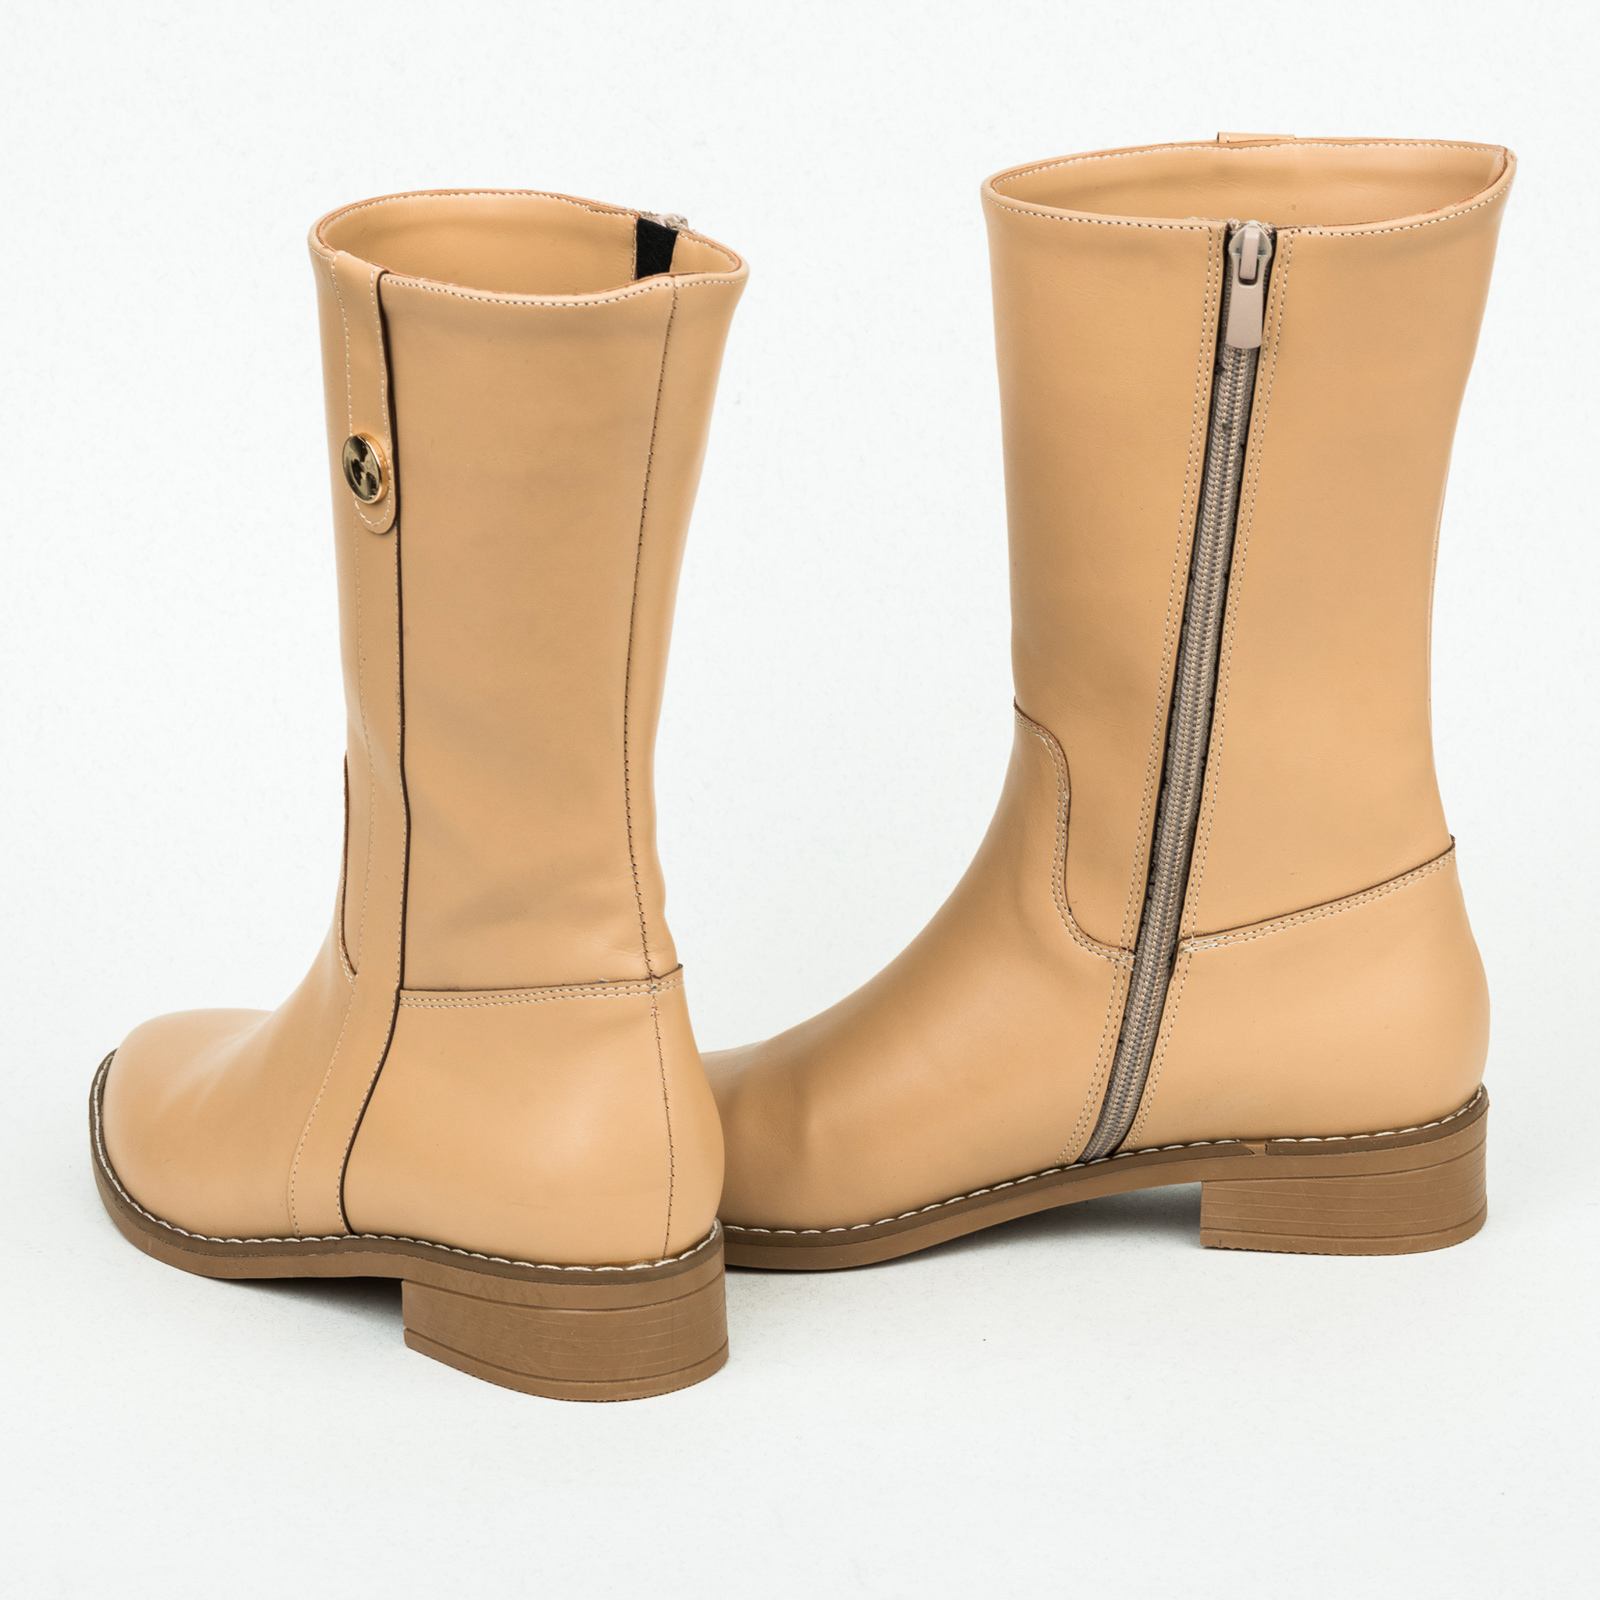 Women ankle boots B143 - BEIGE